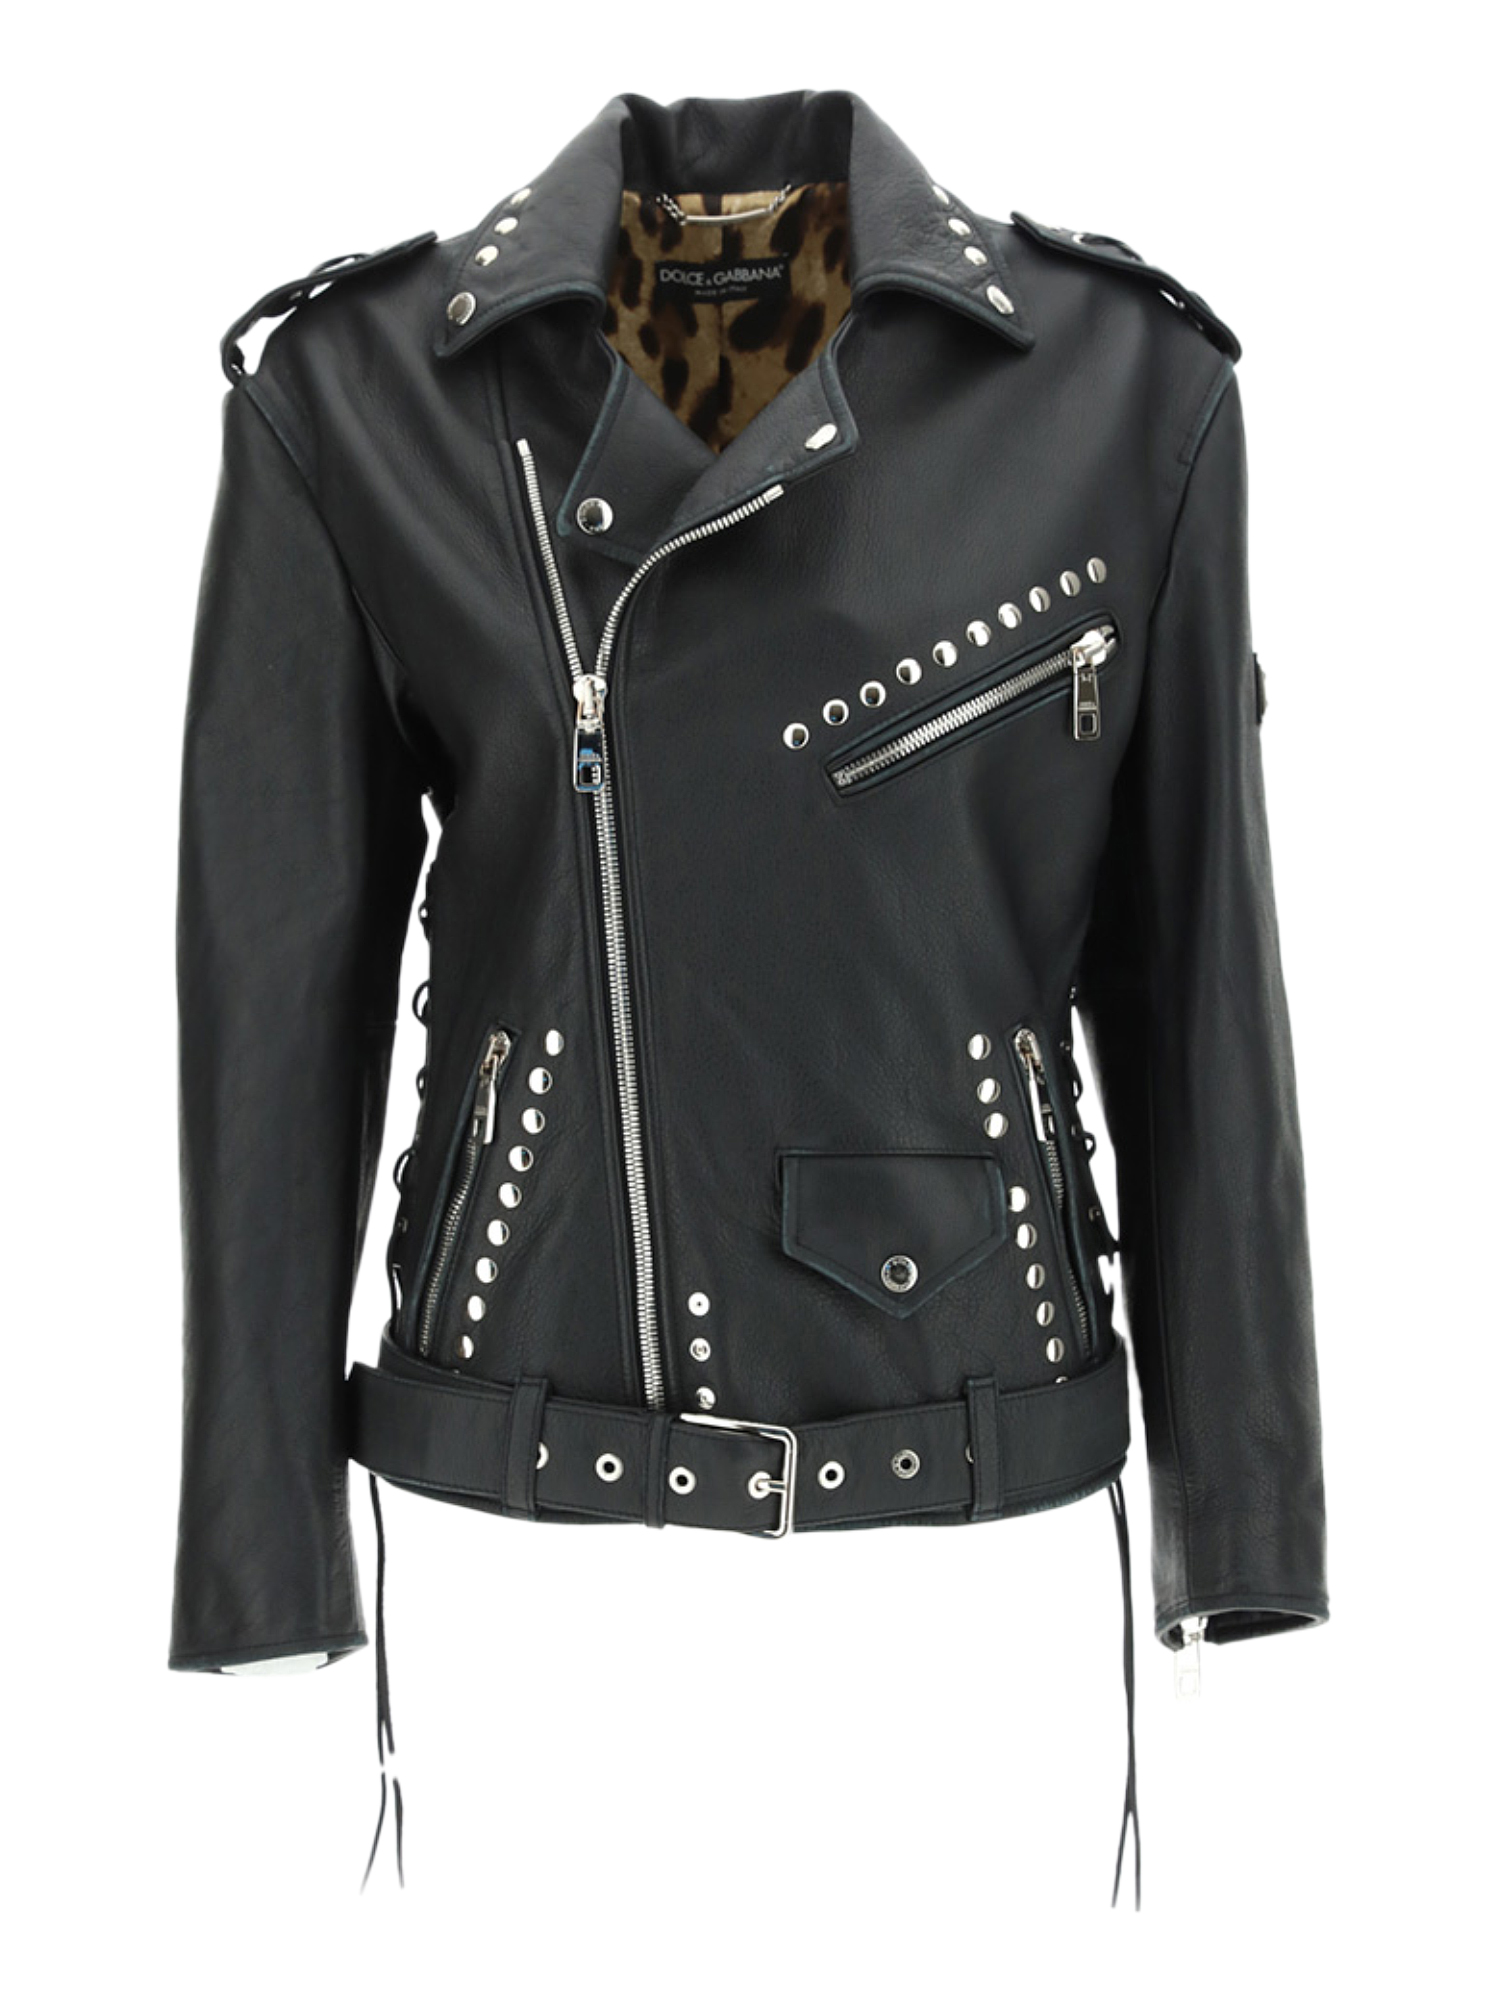 Vestes Pour Femme - Dolce & Gabbana - En Leather Black - Taille:  -